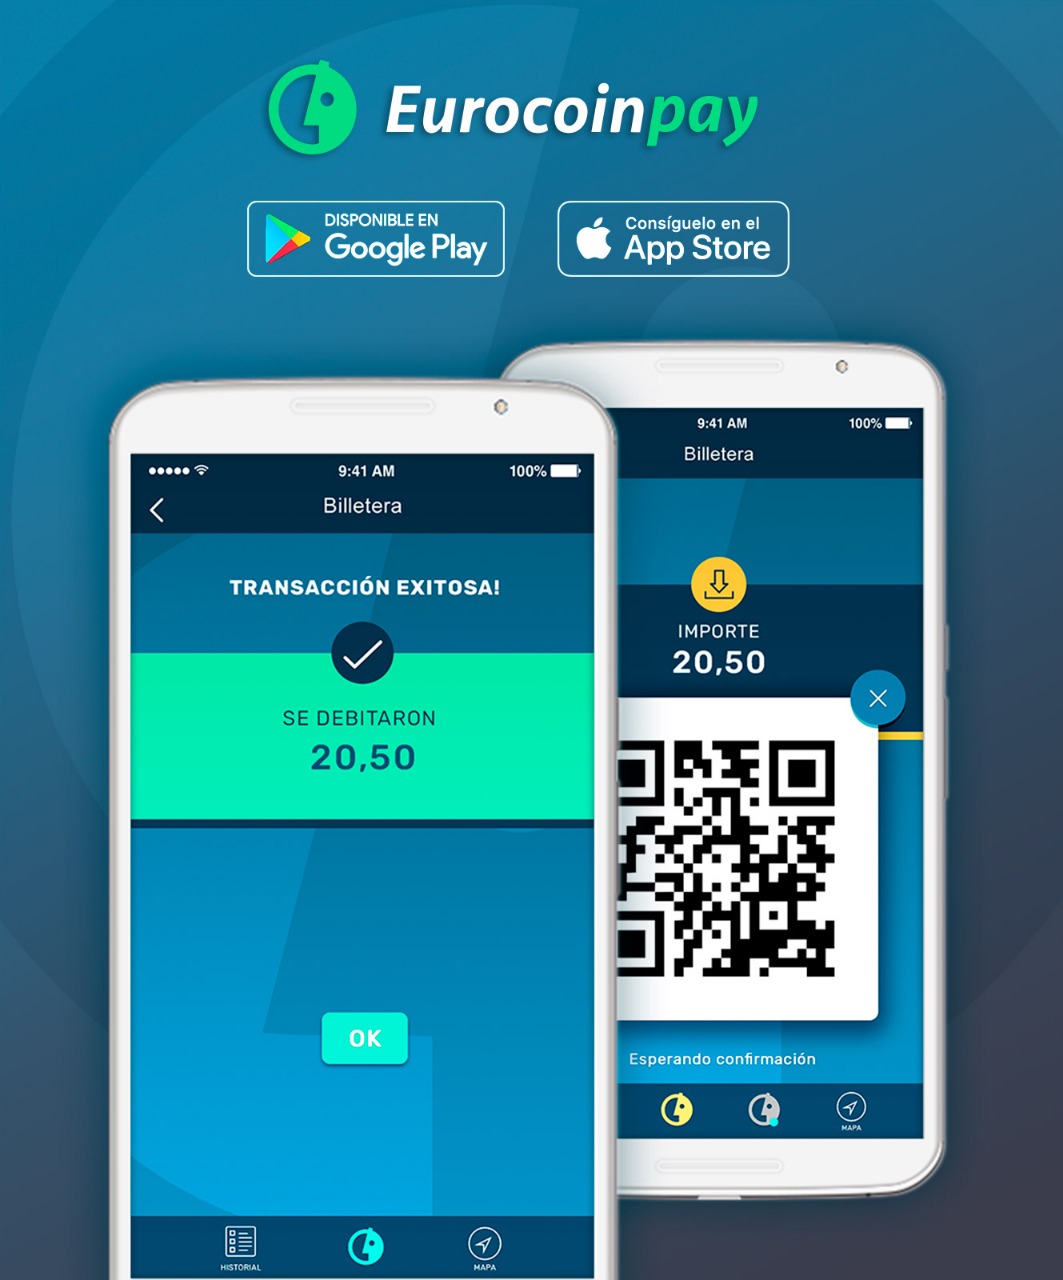 Eurocoinpay lanza su aplicación móvil para iOS y Android